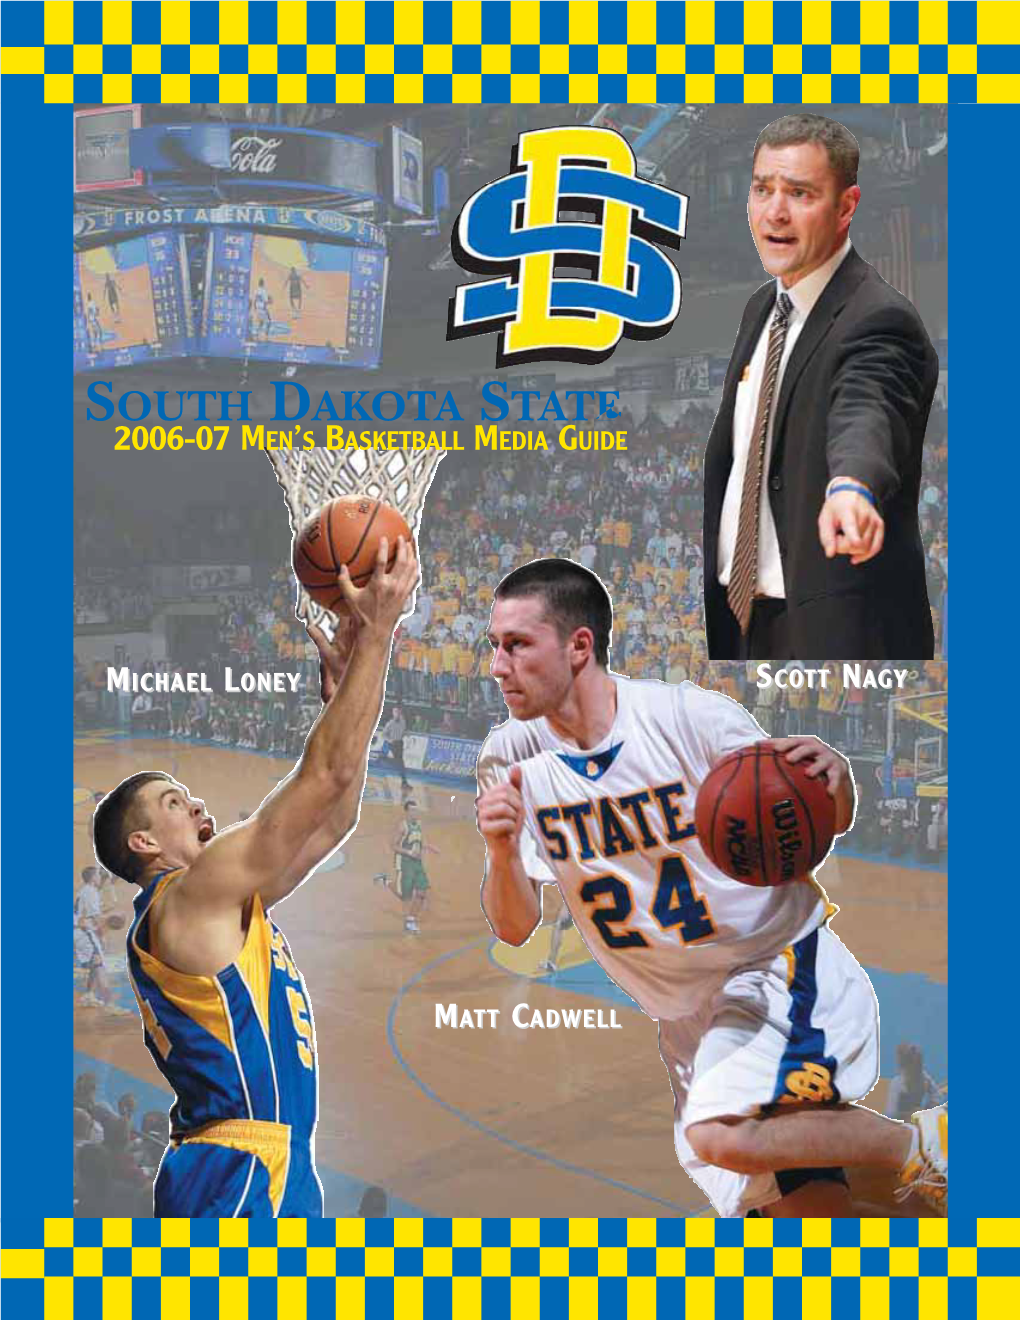 South Dakota State 2006-07 Men's Basketball Media Guide